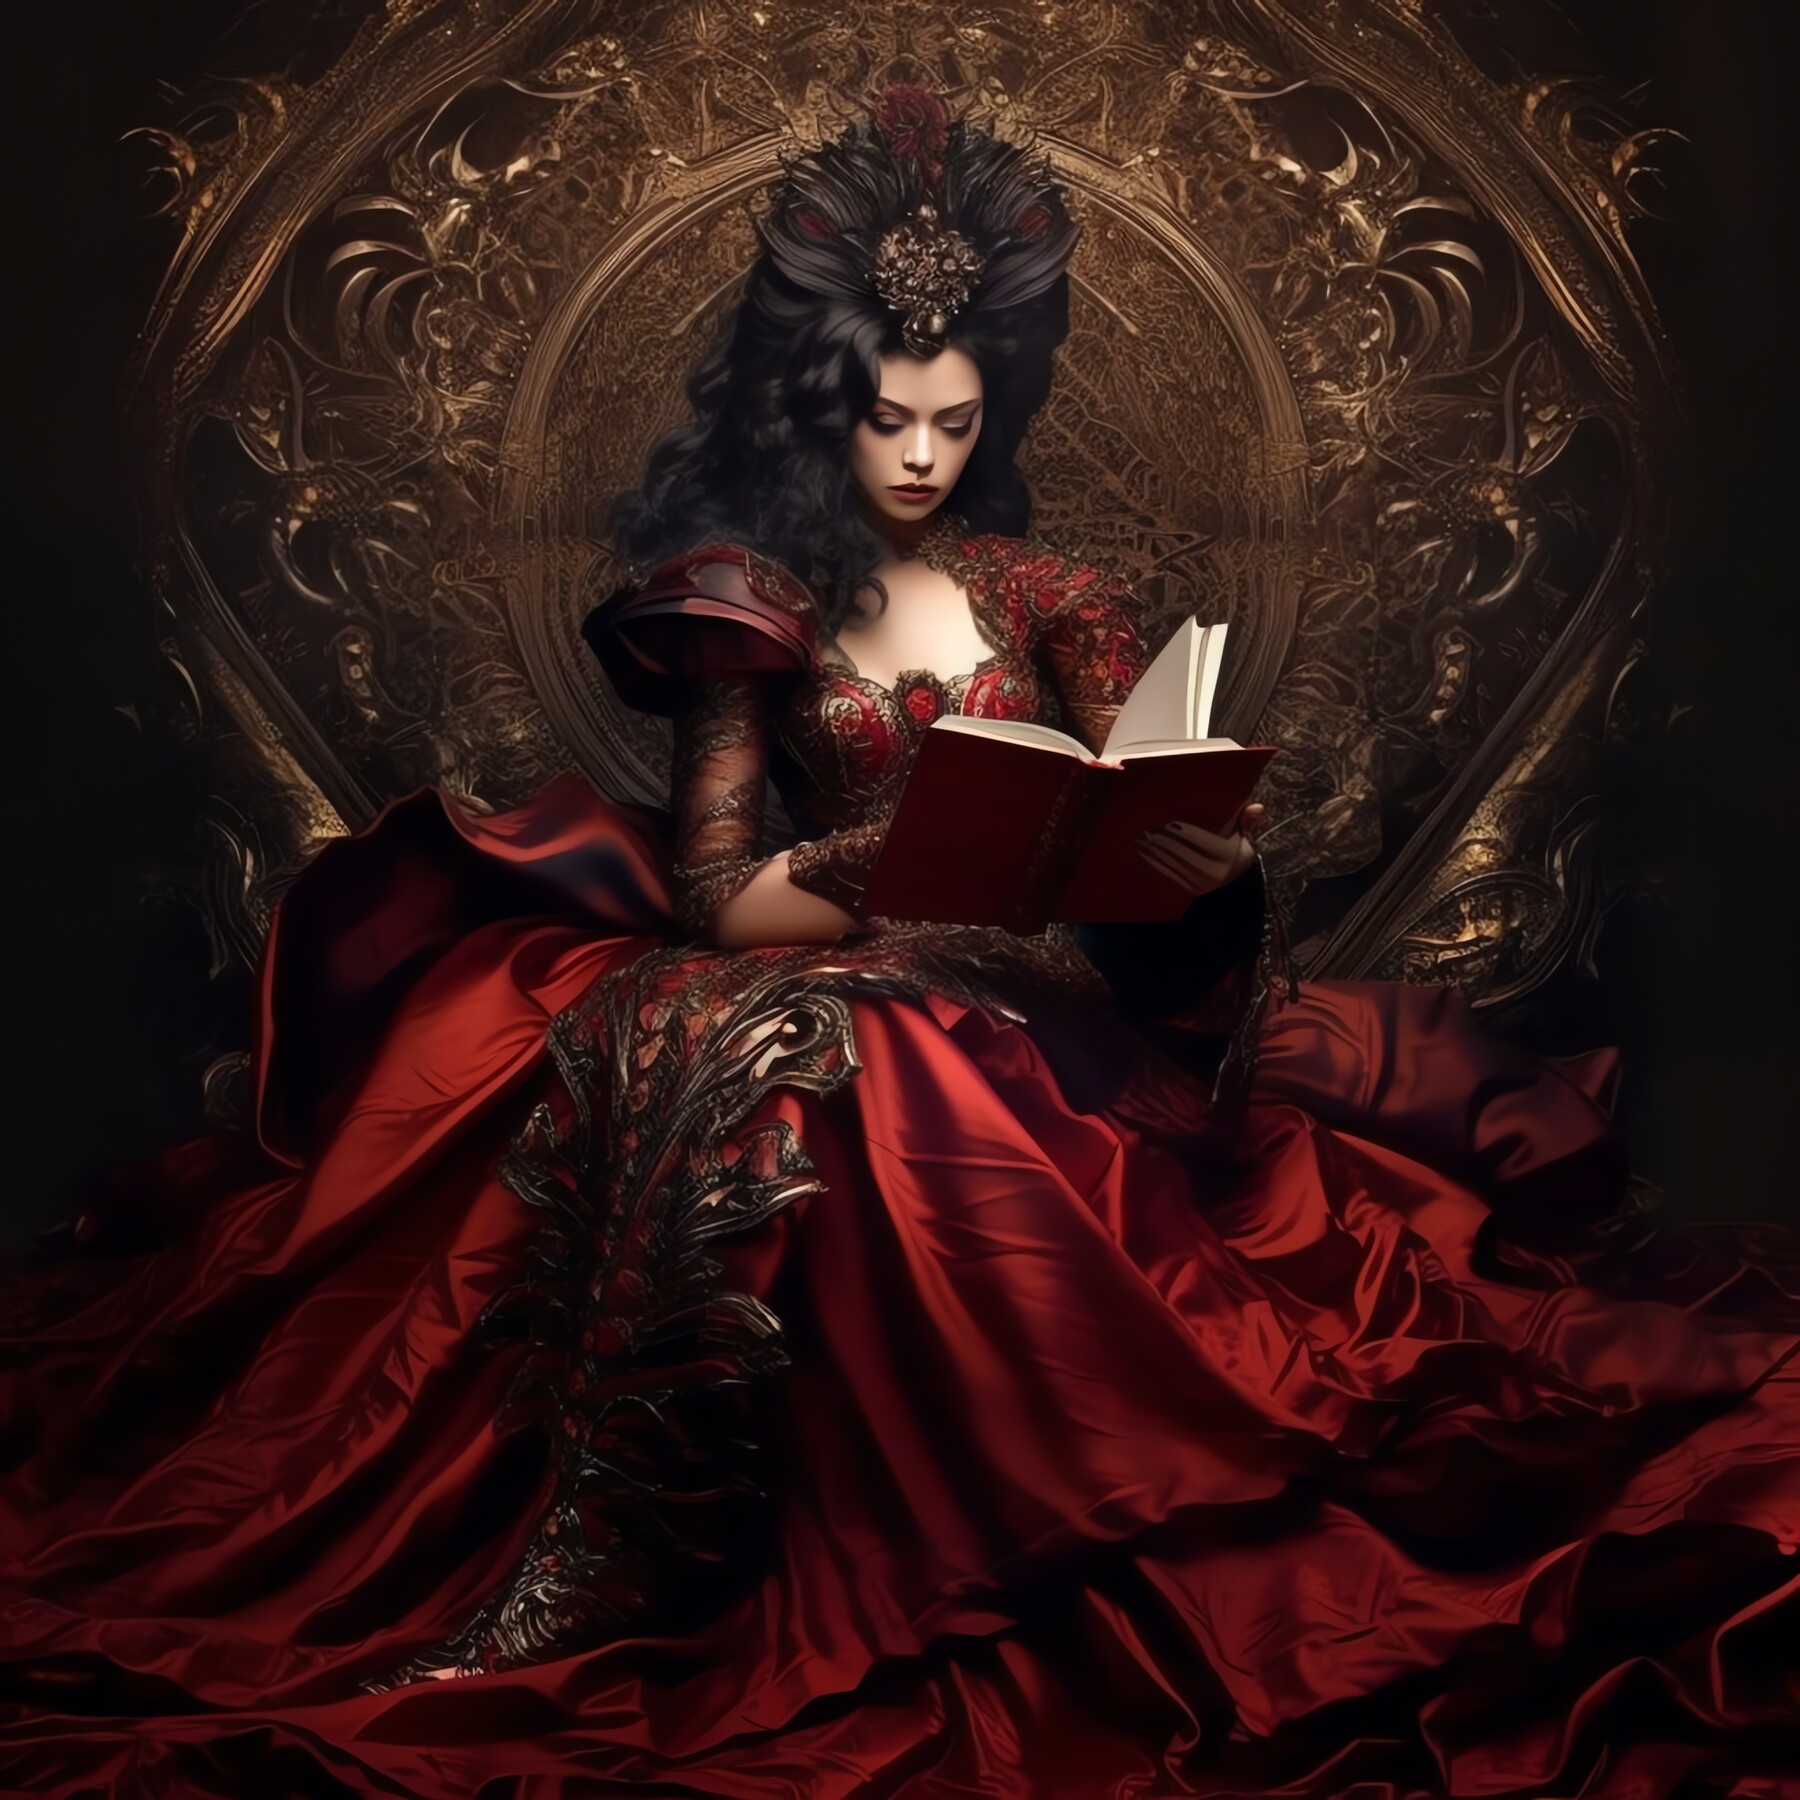 ArtStation - Vampire Queen - II | Artworks